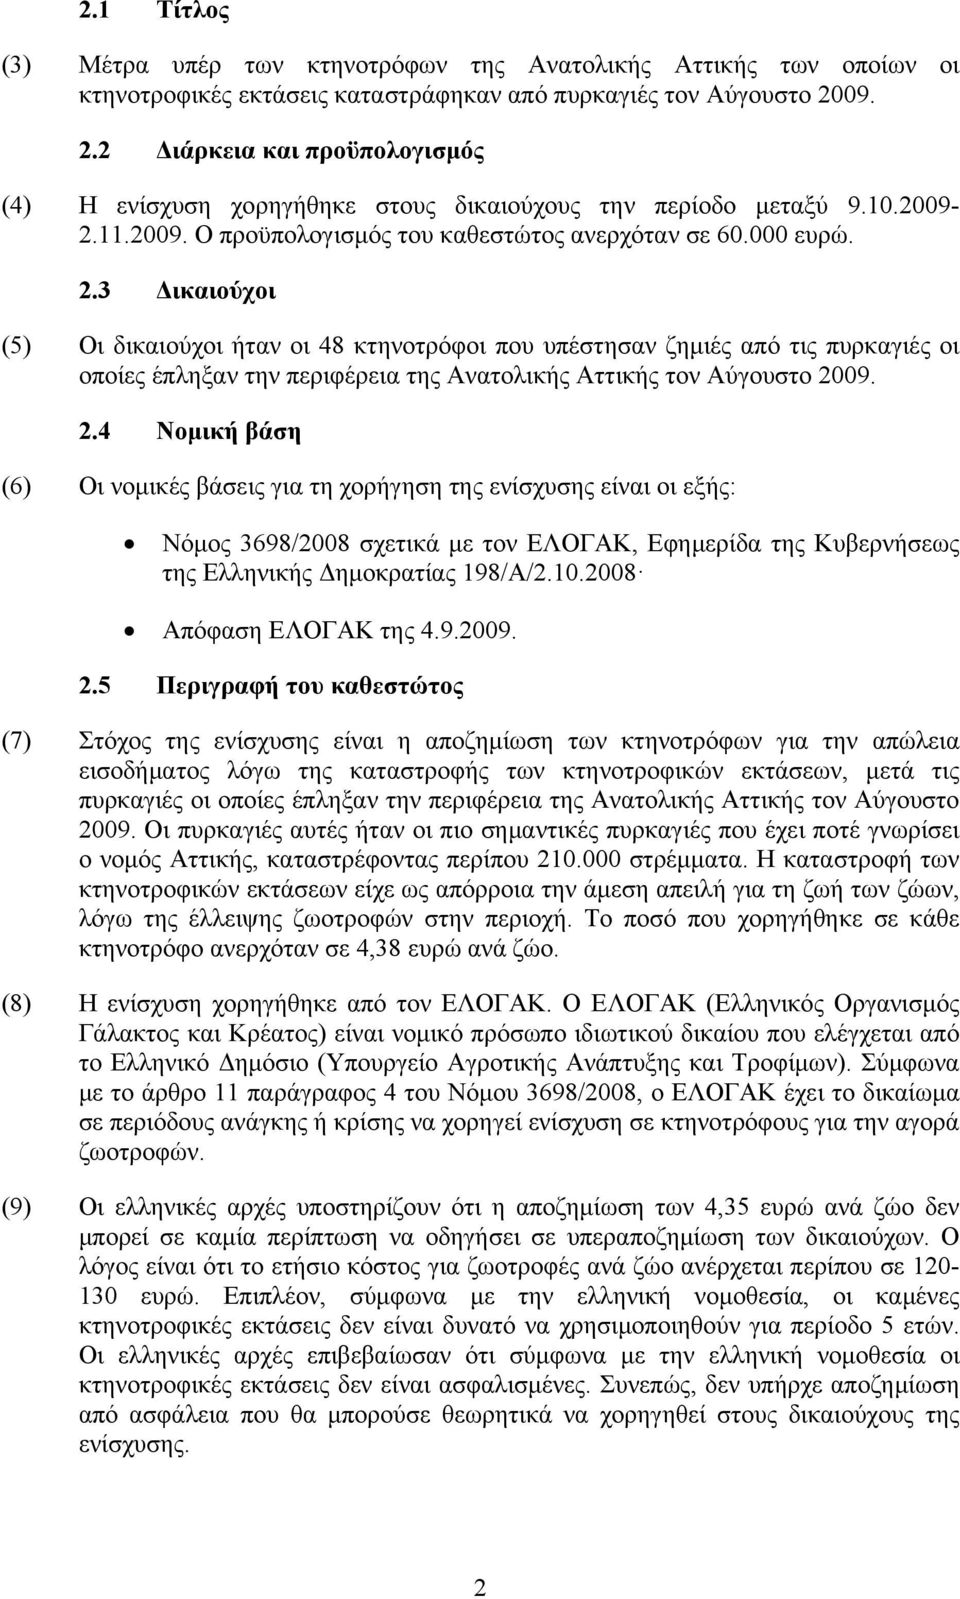 2.4 Νομική βάση (6) Οι νομικές βάσεις για τη χορήγηση της ενίσχυσης είναι οι εξής: Νόμος 3698/2008 σχετικά με τον ΕΛΟΓΑΚ, Εφημερίδα της Κυβερνήσεως της Ελληνικής Δημοκρατίας 198/A/2.10.